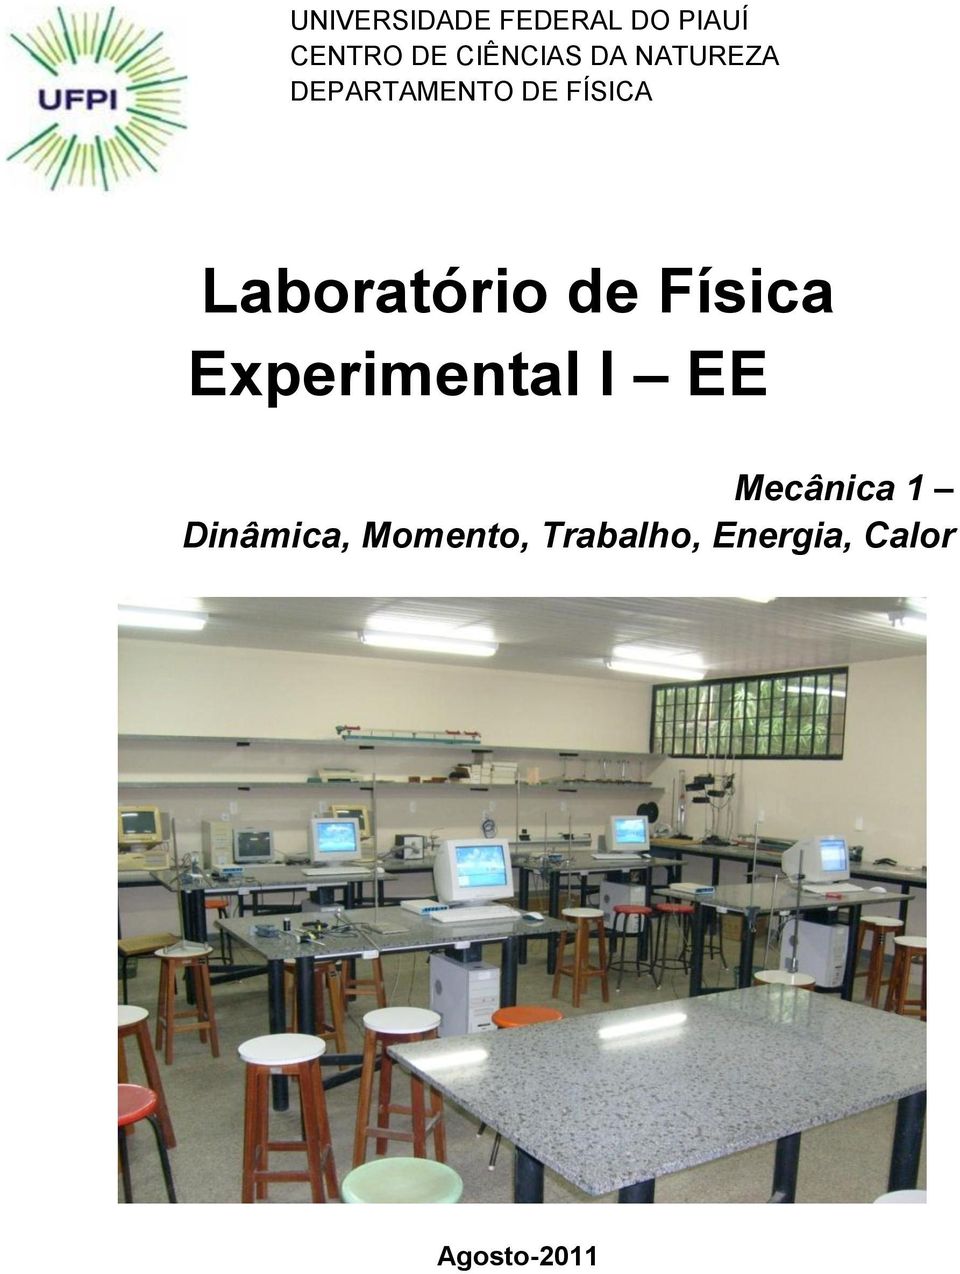 Laboratório de Física Experimental I EE